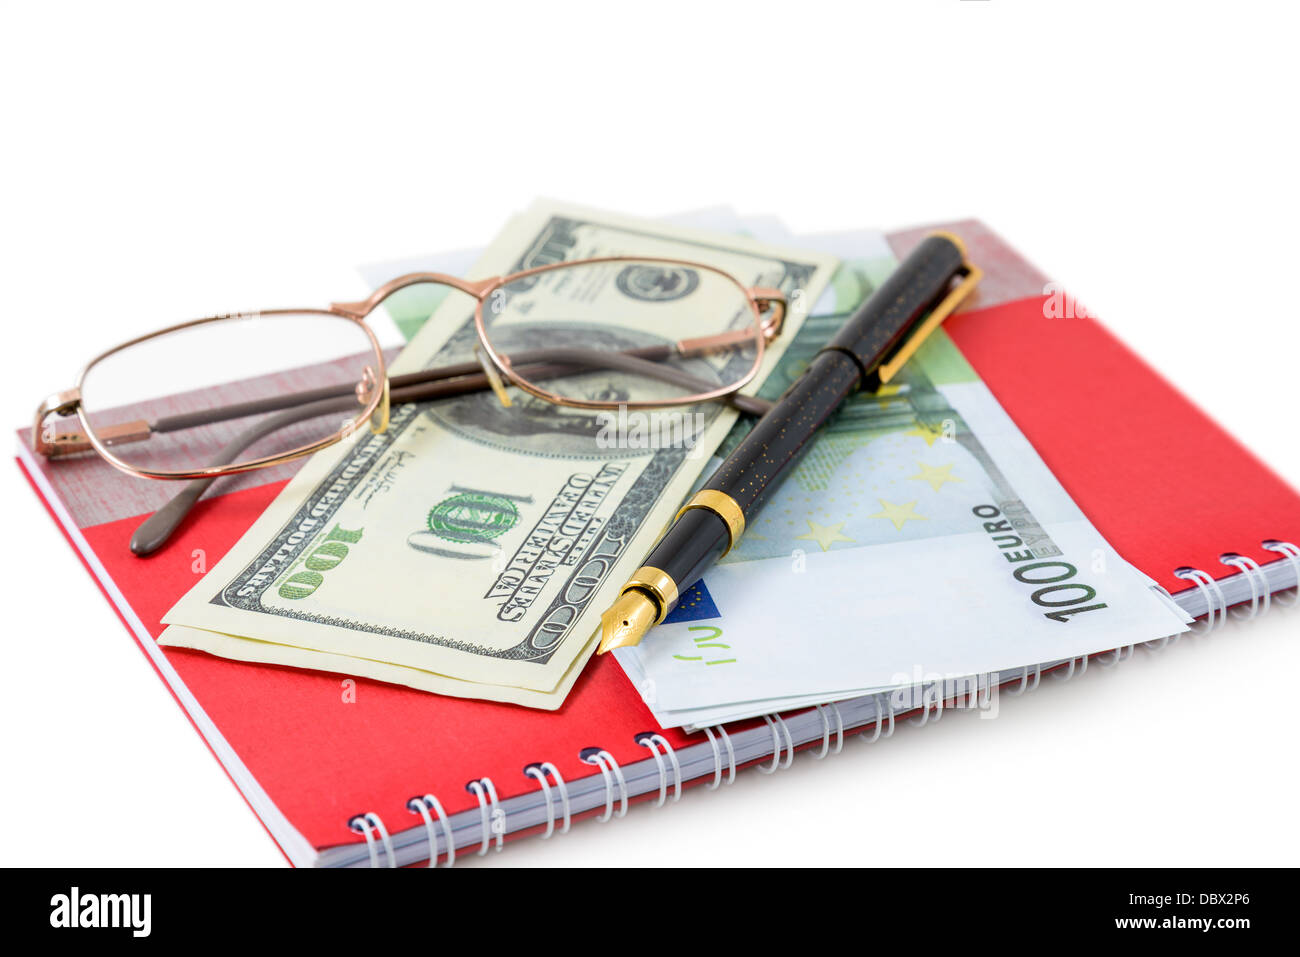 Le stylo, lunettes, dollars, euros sont couché sur un cahier rouge Banque D'Images